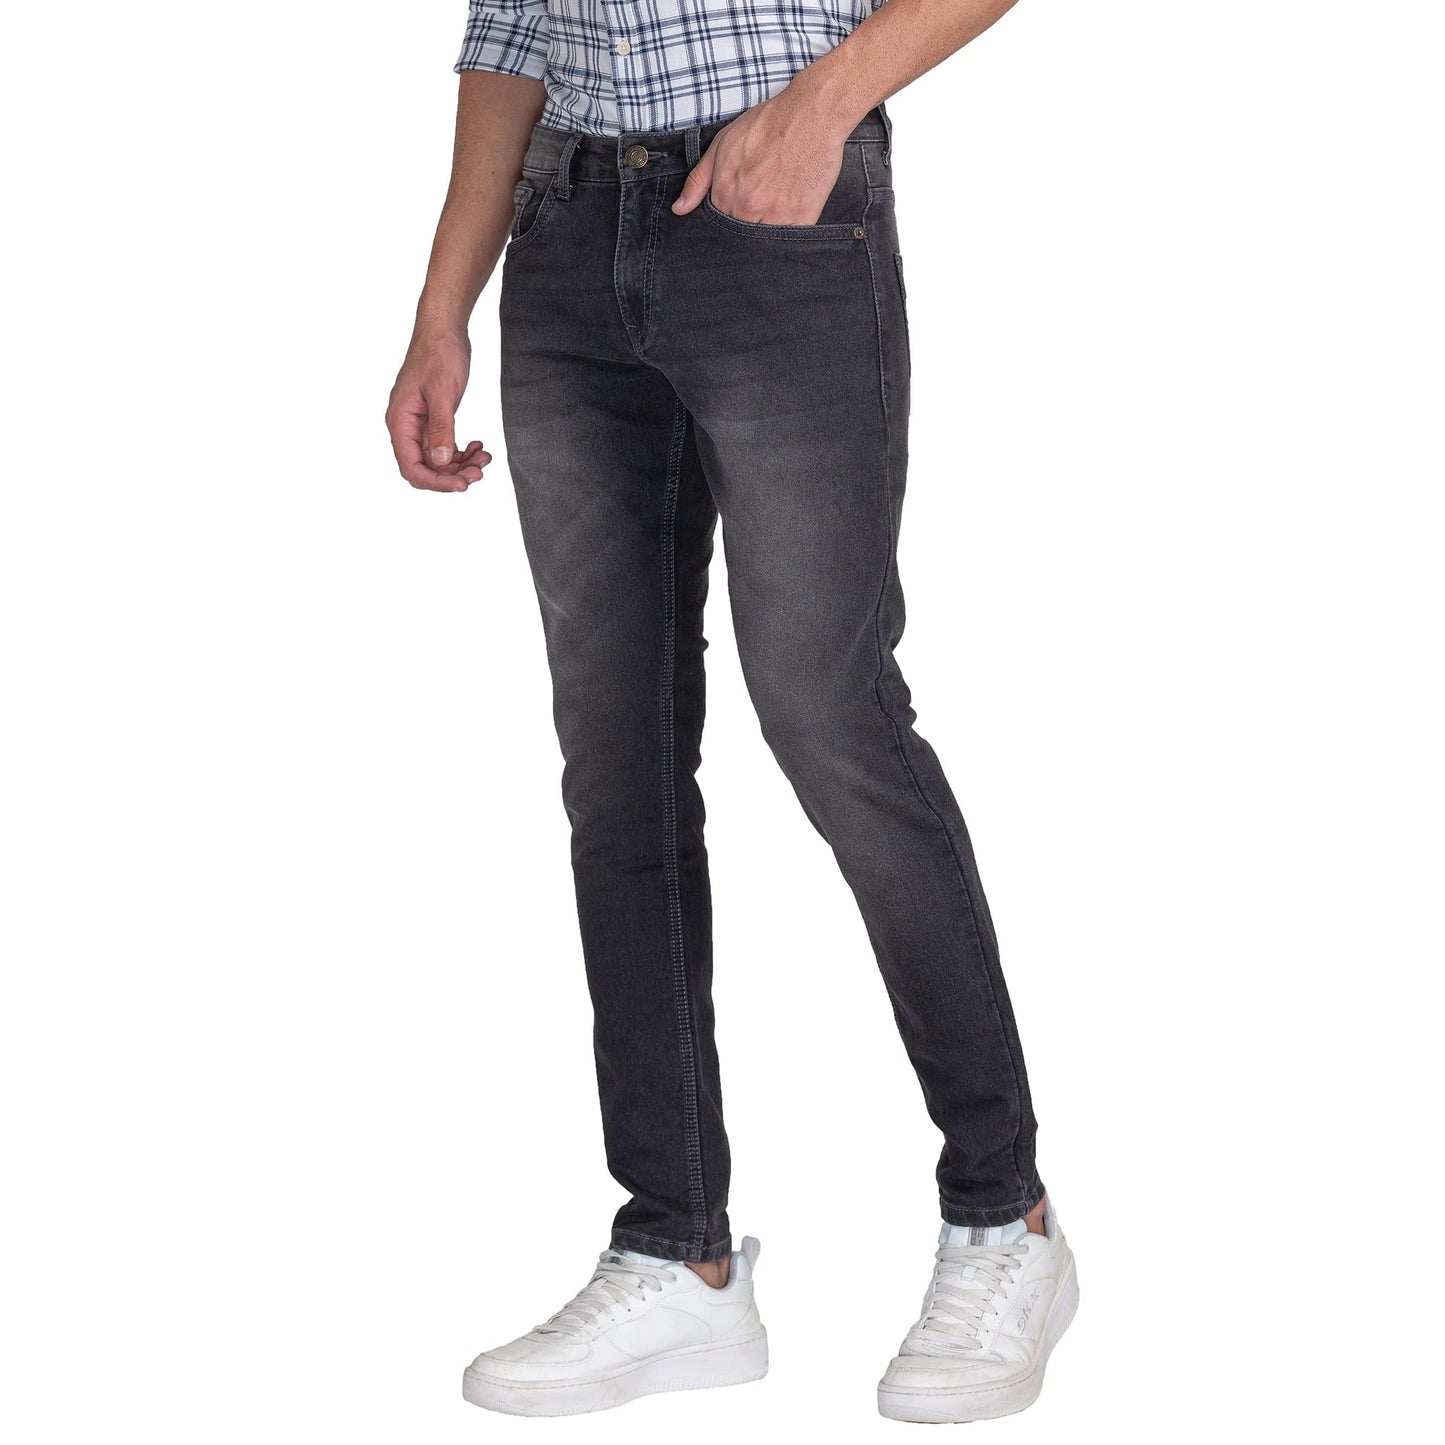 Giordano Men's Slim Fit Stretchable Jeans Black